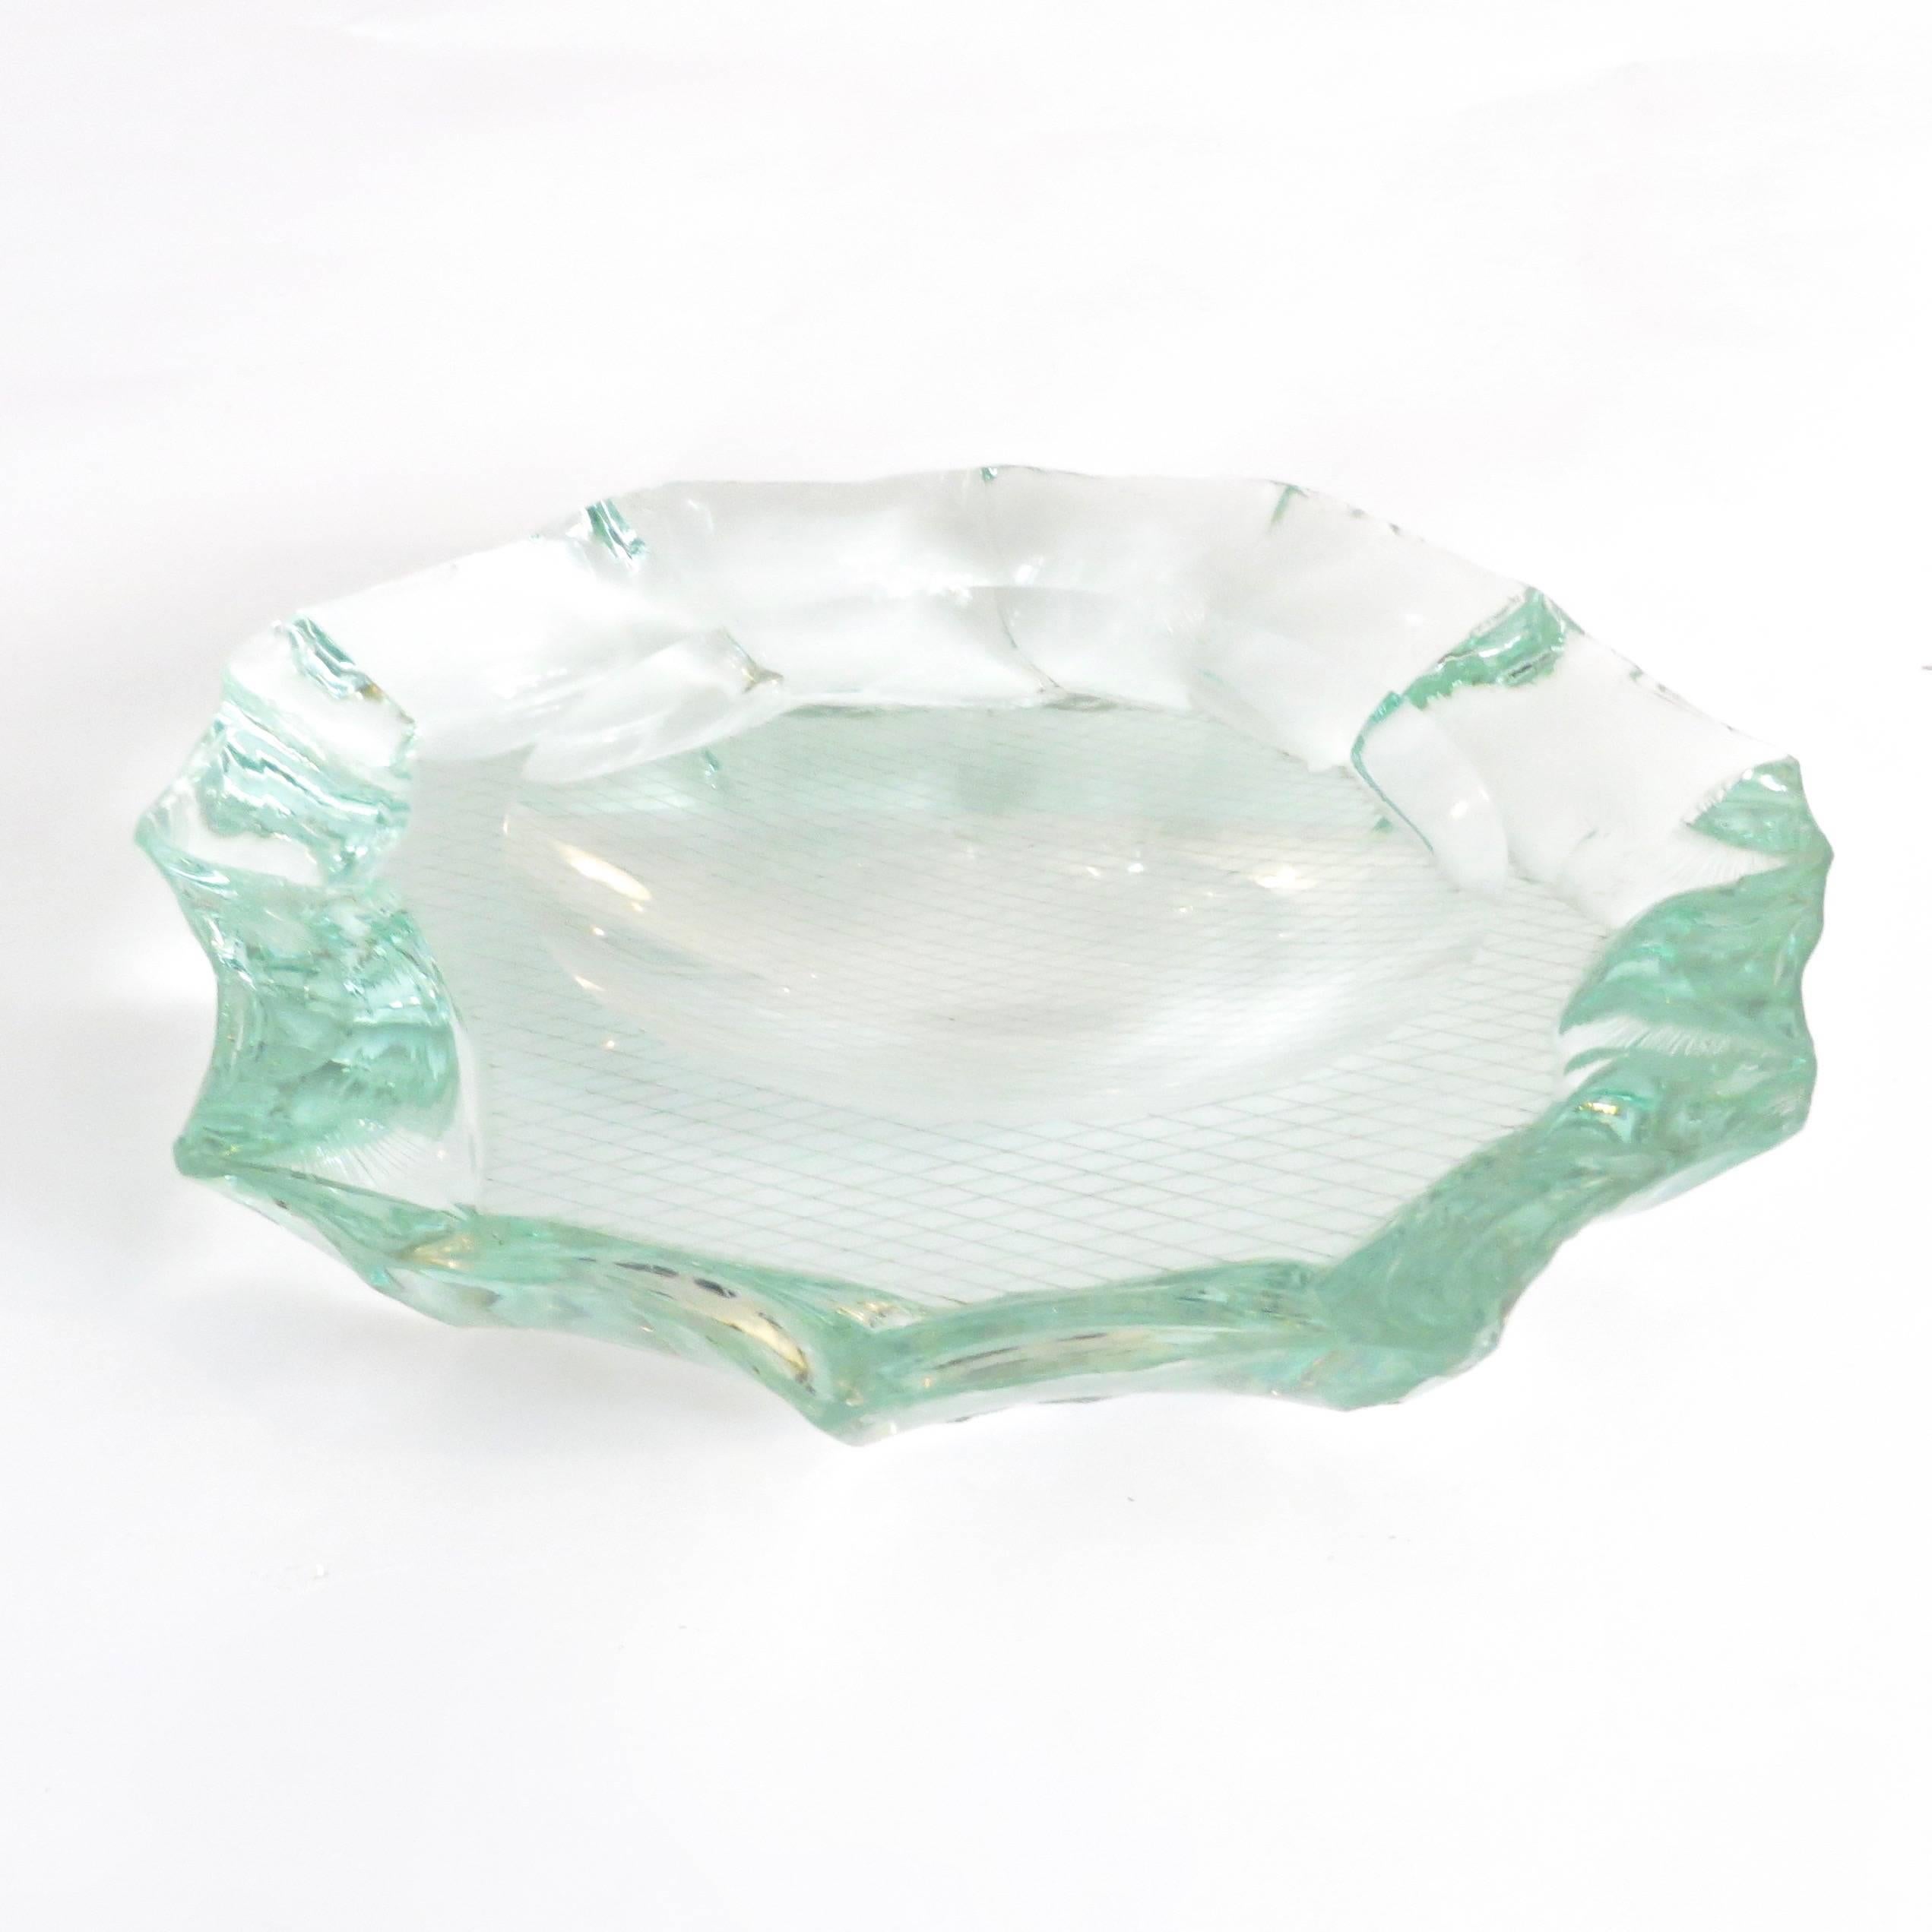 Cast Scalpellato Italian Glass Dish or Vide Poche by Pietro Chiesa Fontana Arte